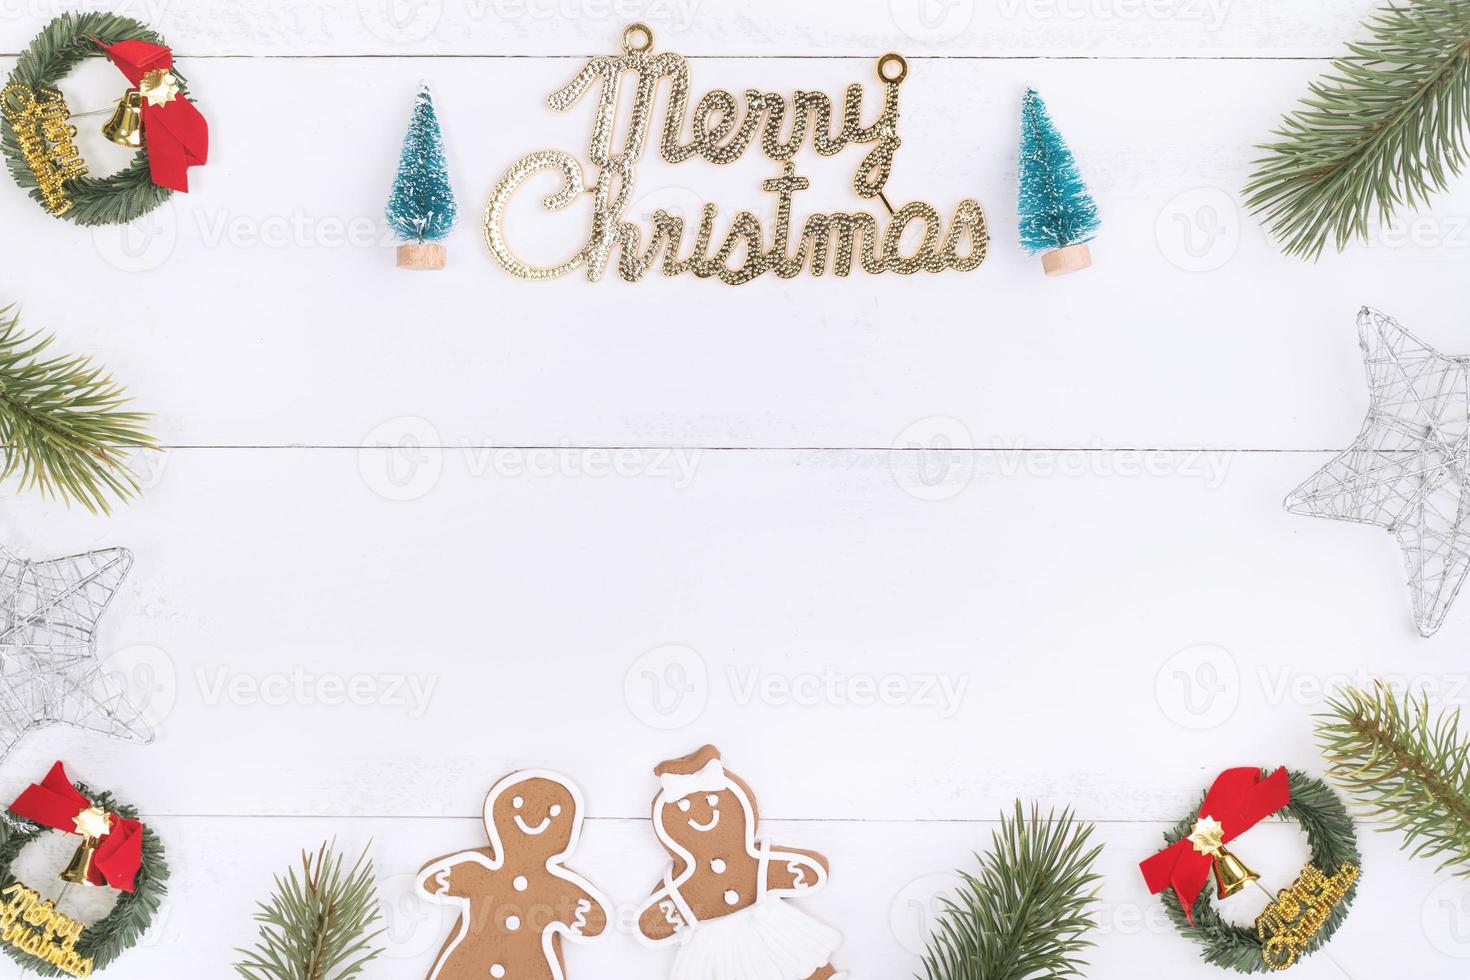 Kerst concept samenstelling decoratie objecten, dennenboom tak krans, peperkoek man koekje geïsoleerd op een witte houten tafel, bovenaanzicht, plat lag foto